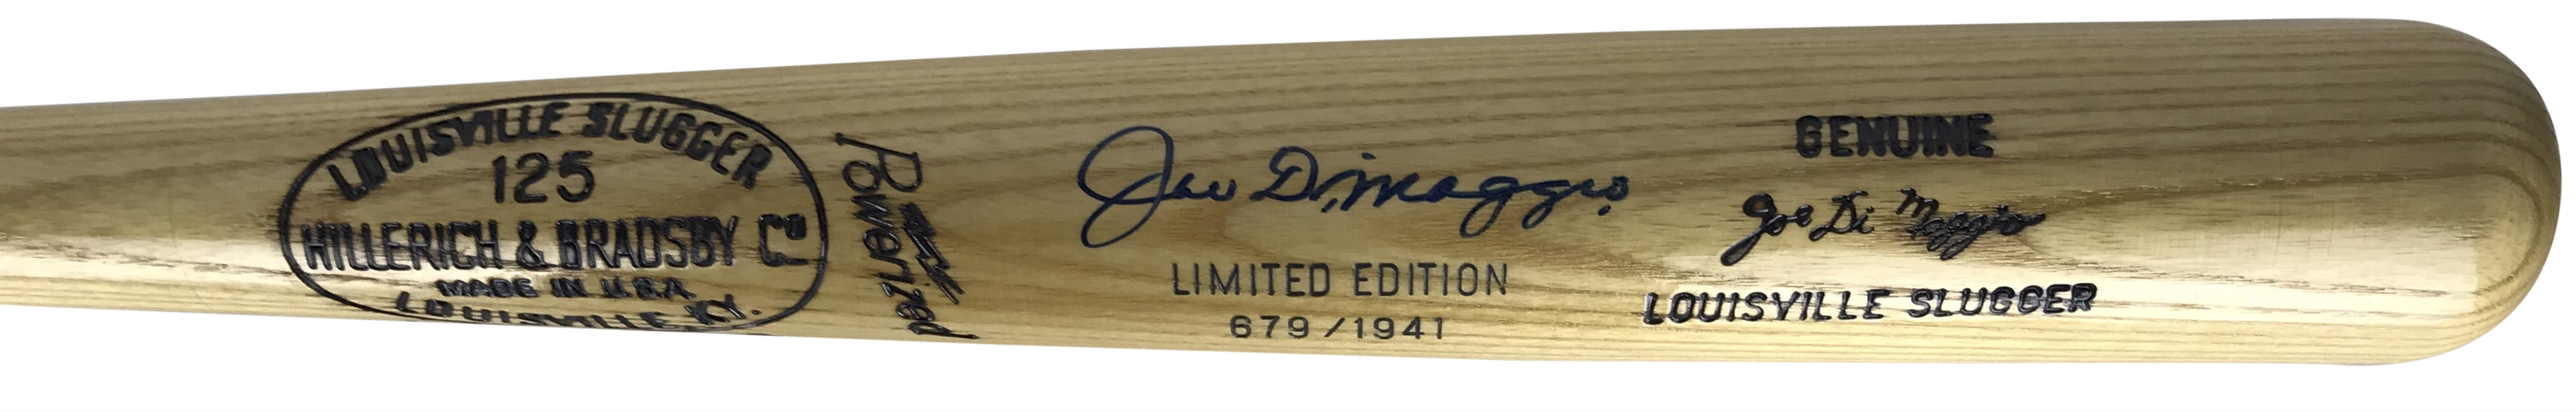 Joe DiMaggio Near-Mint Signed Ltd. Ed. (679/1941) H&B Pro Model Baseball Bat (BAS/Beckett Guaranteed)